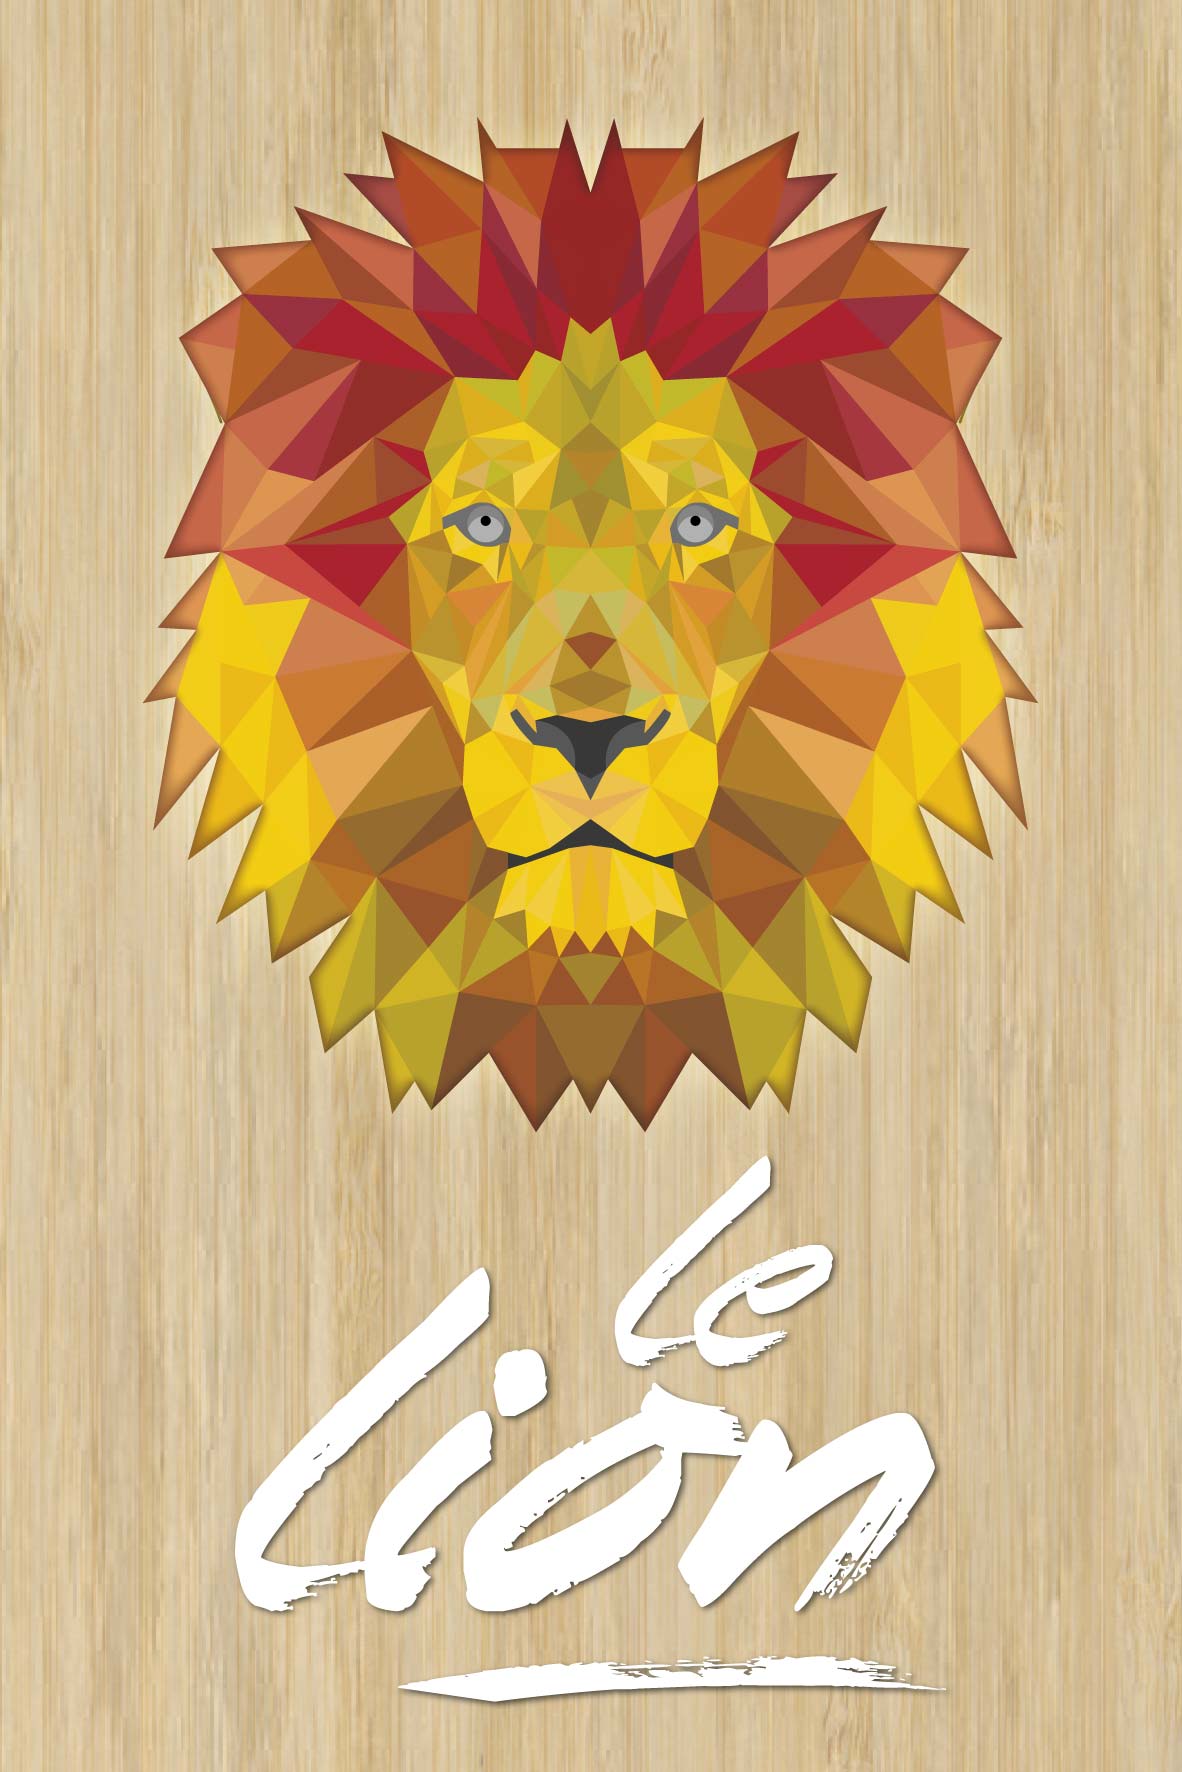 carte postale bois lion